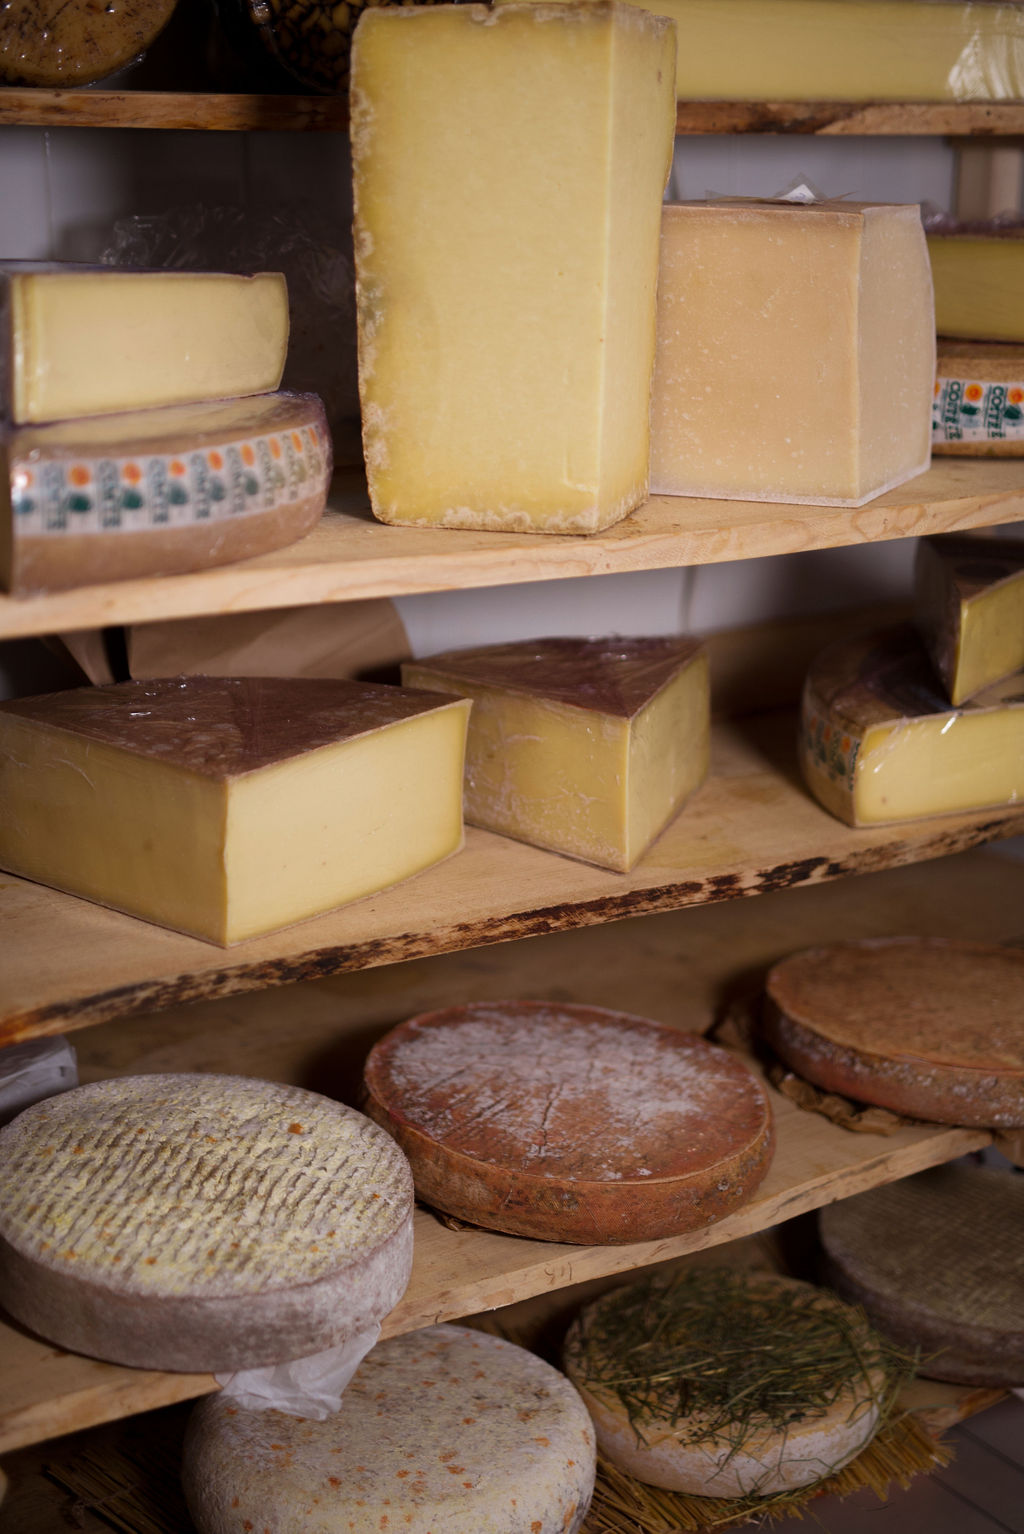 Comment bien conserver les fromages ?